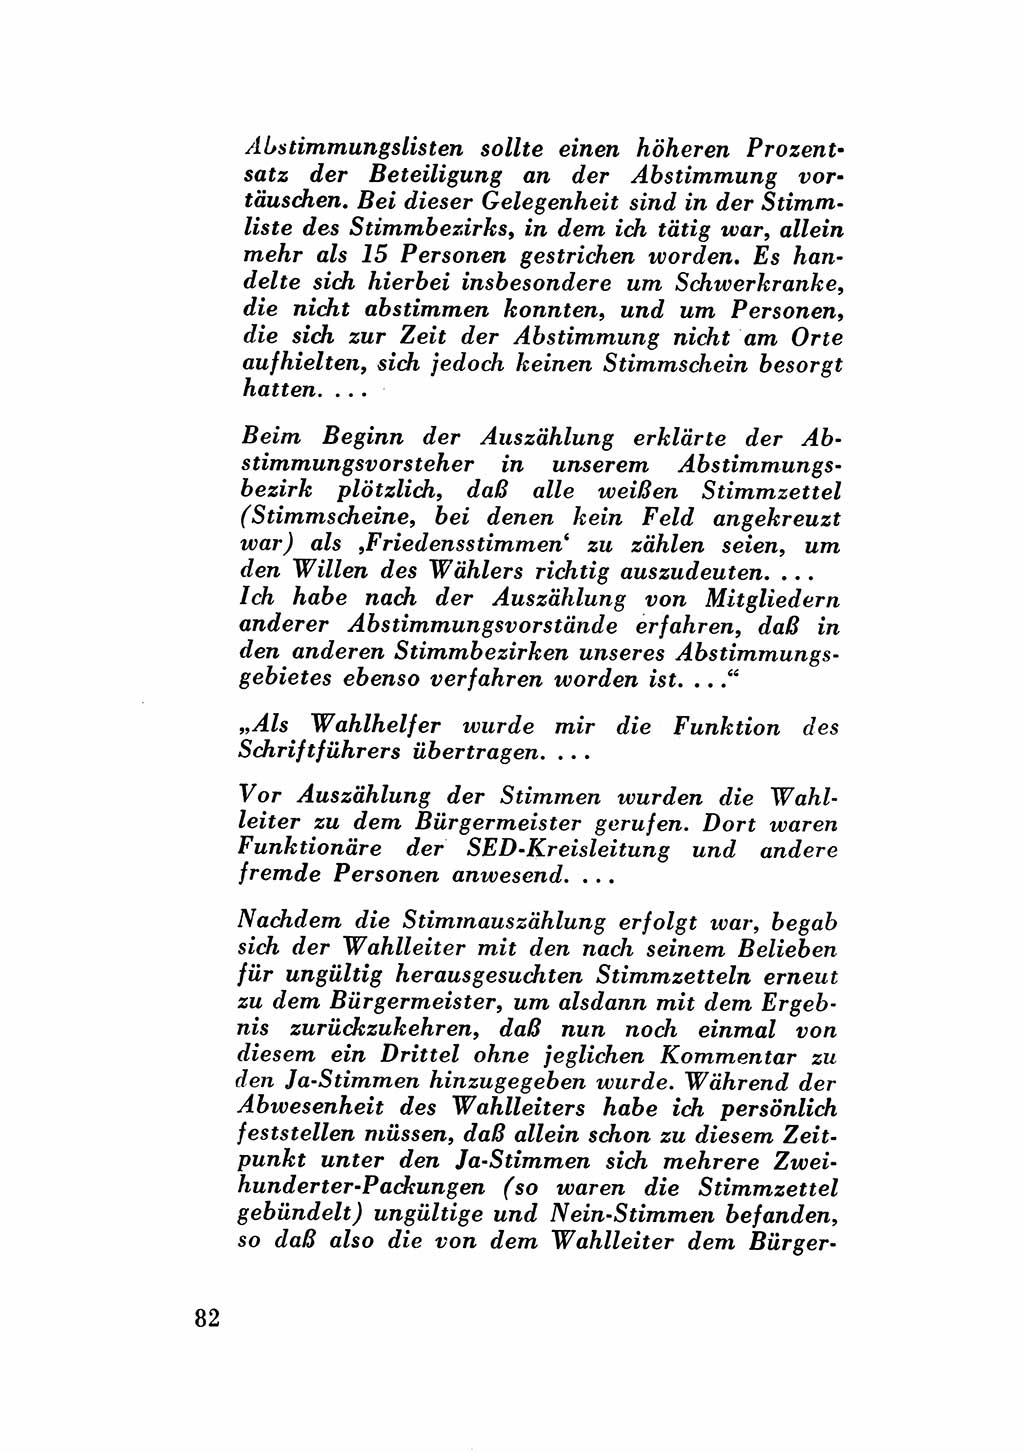 Katalog des Unrechts, Untersuchungsausschuß Freiheitlicher Juristen (UfJ) [Bundesrepublik Deutschland (BRD)] 1956, Seite 82 (Kat. UnR. UfJ BRD 1956, S. 82)